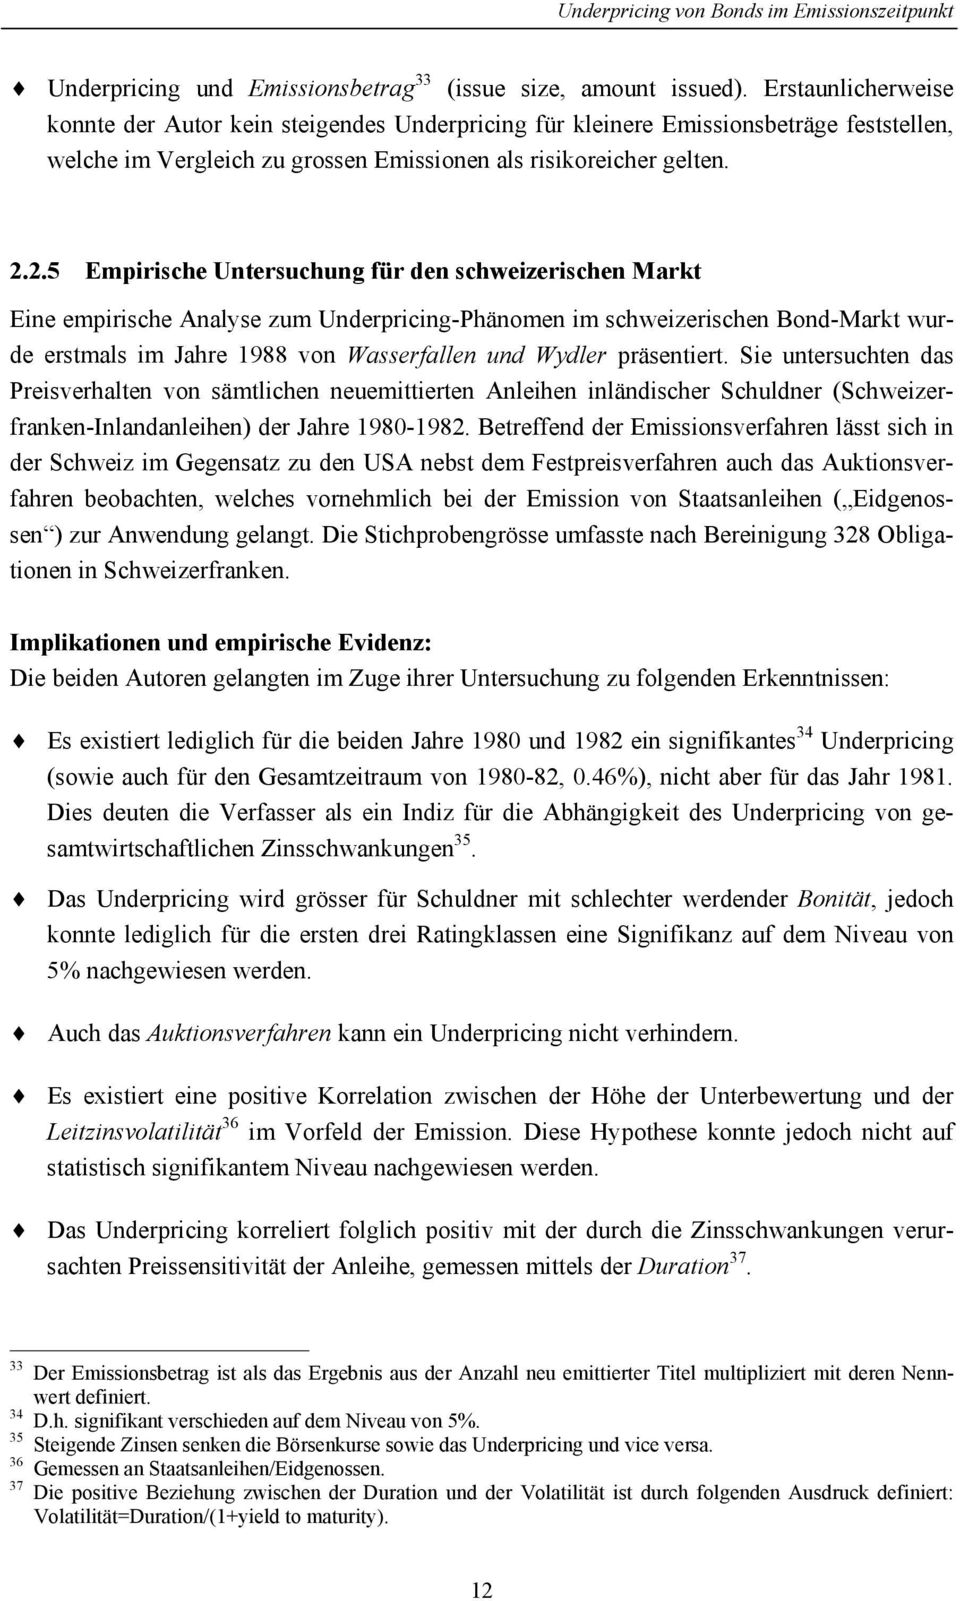 2.5 Empirische Untersuchung für den schweizerischen Markt Eine empirische Analyse zum Underpricing-Phänomen im schweizerischen Bond-Markt wurde erstmals im Jahre 1988 von Wasserfallen und Wydler